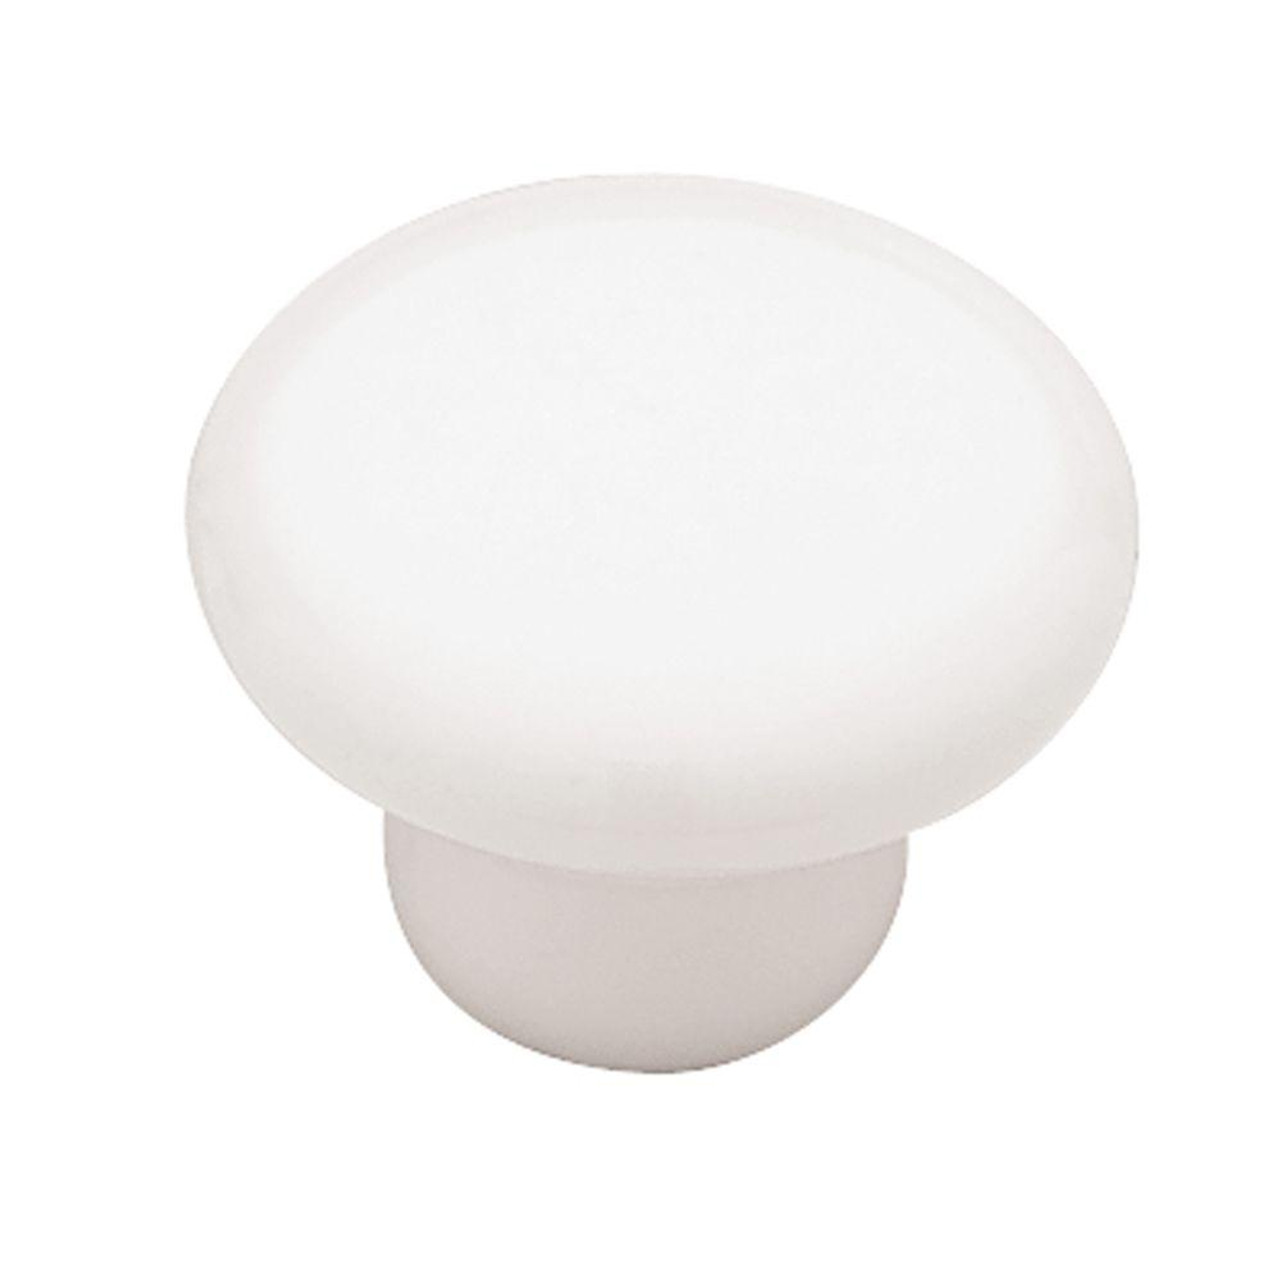 P95710C-W 1" Round White Ceramic Drawer Knob Cabinet Pull